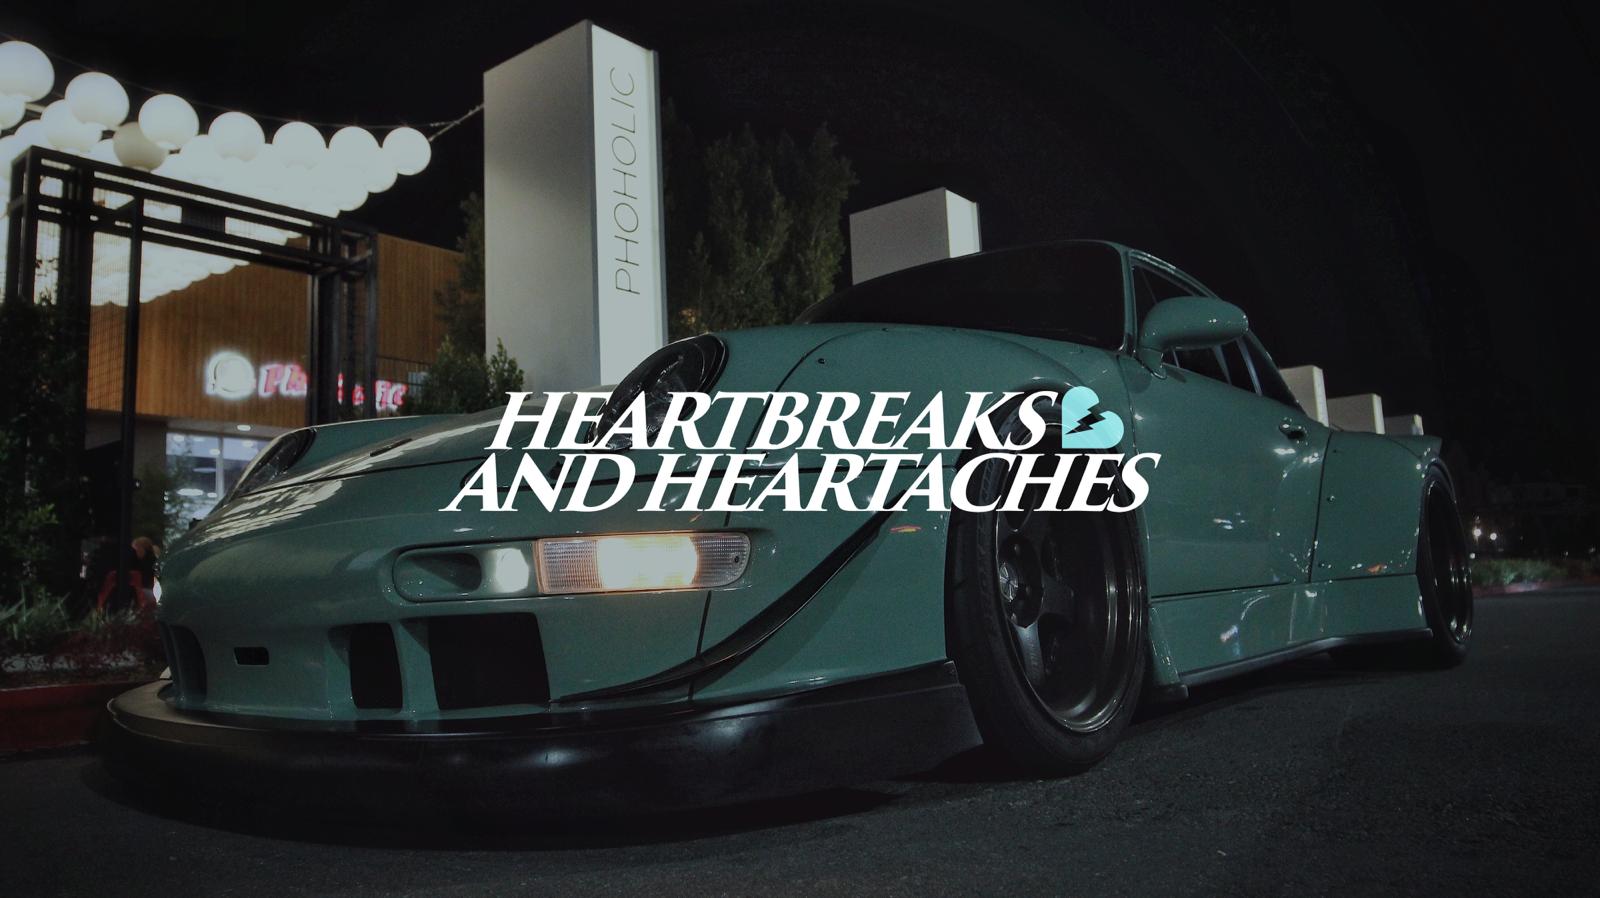 HEARTBREAKS & HEARTACHES